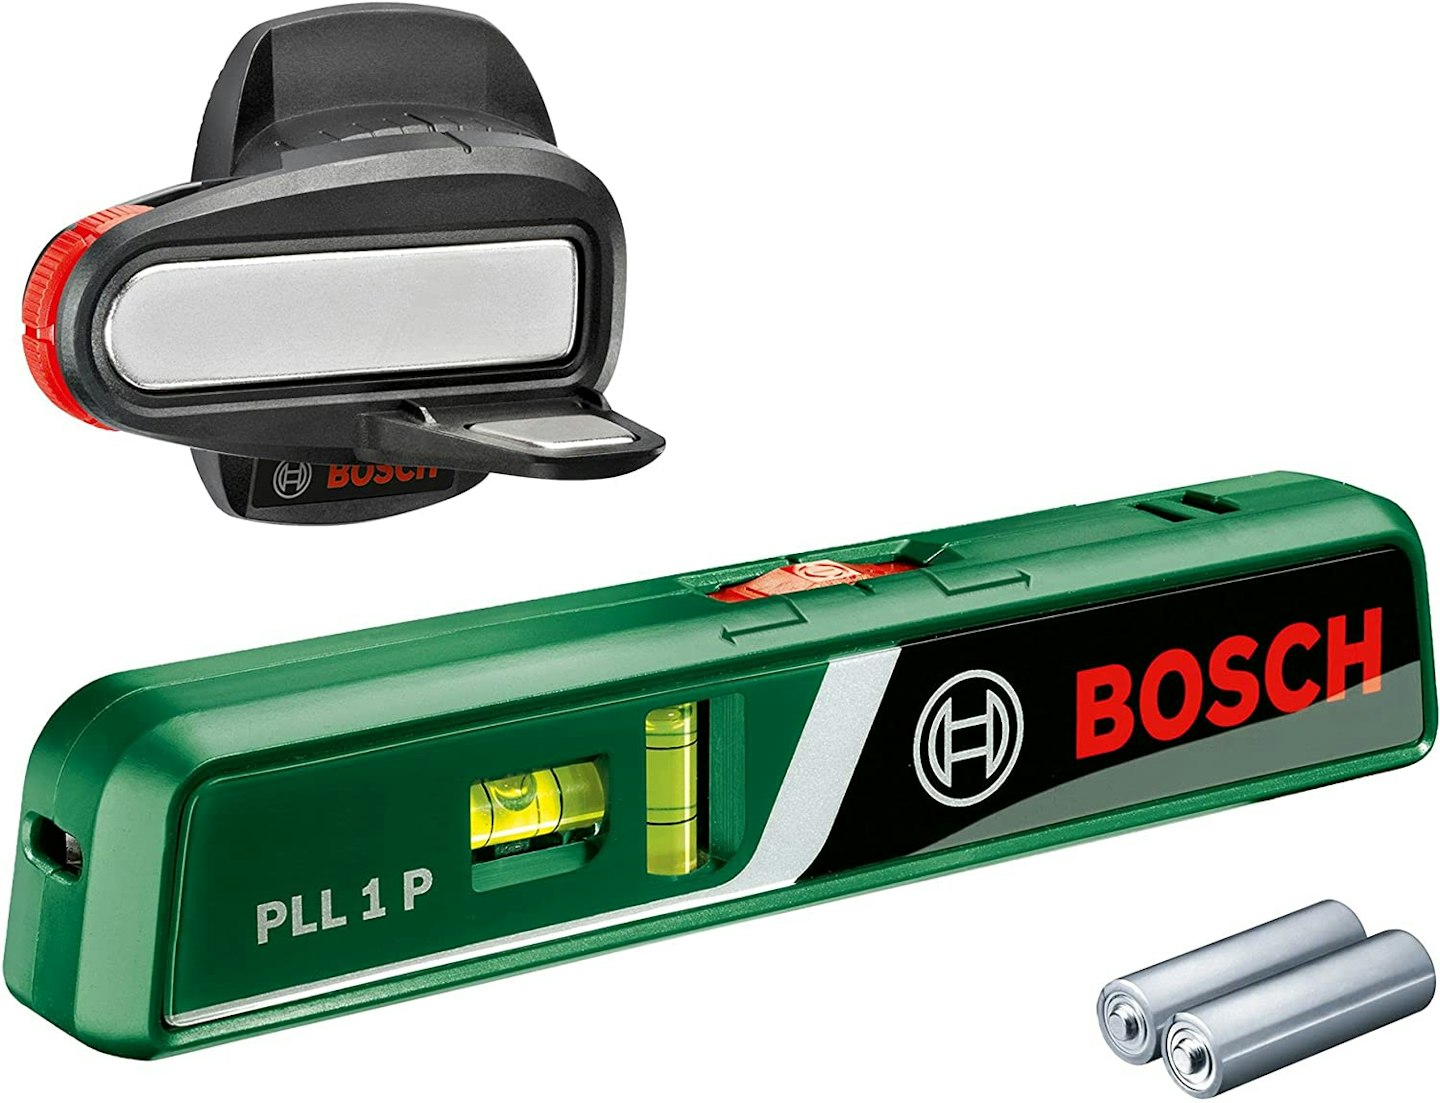 Bosch PLL 1 P Laser Spirit Level